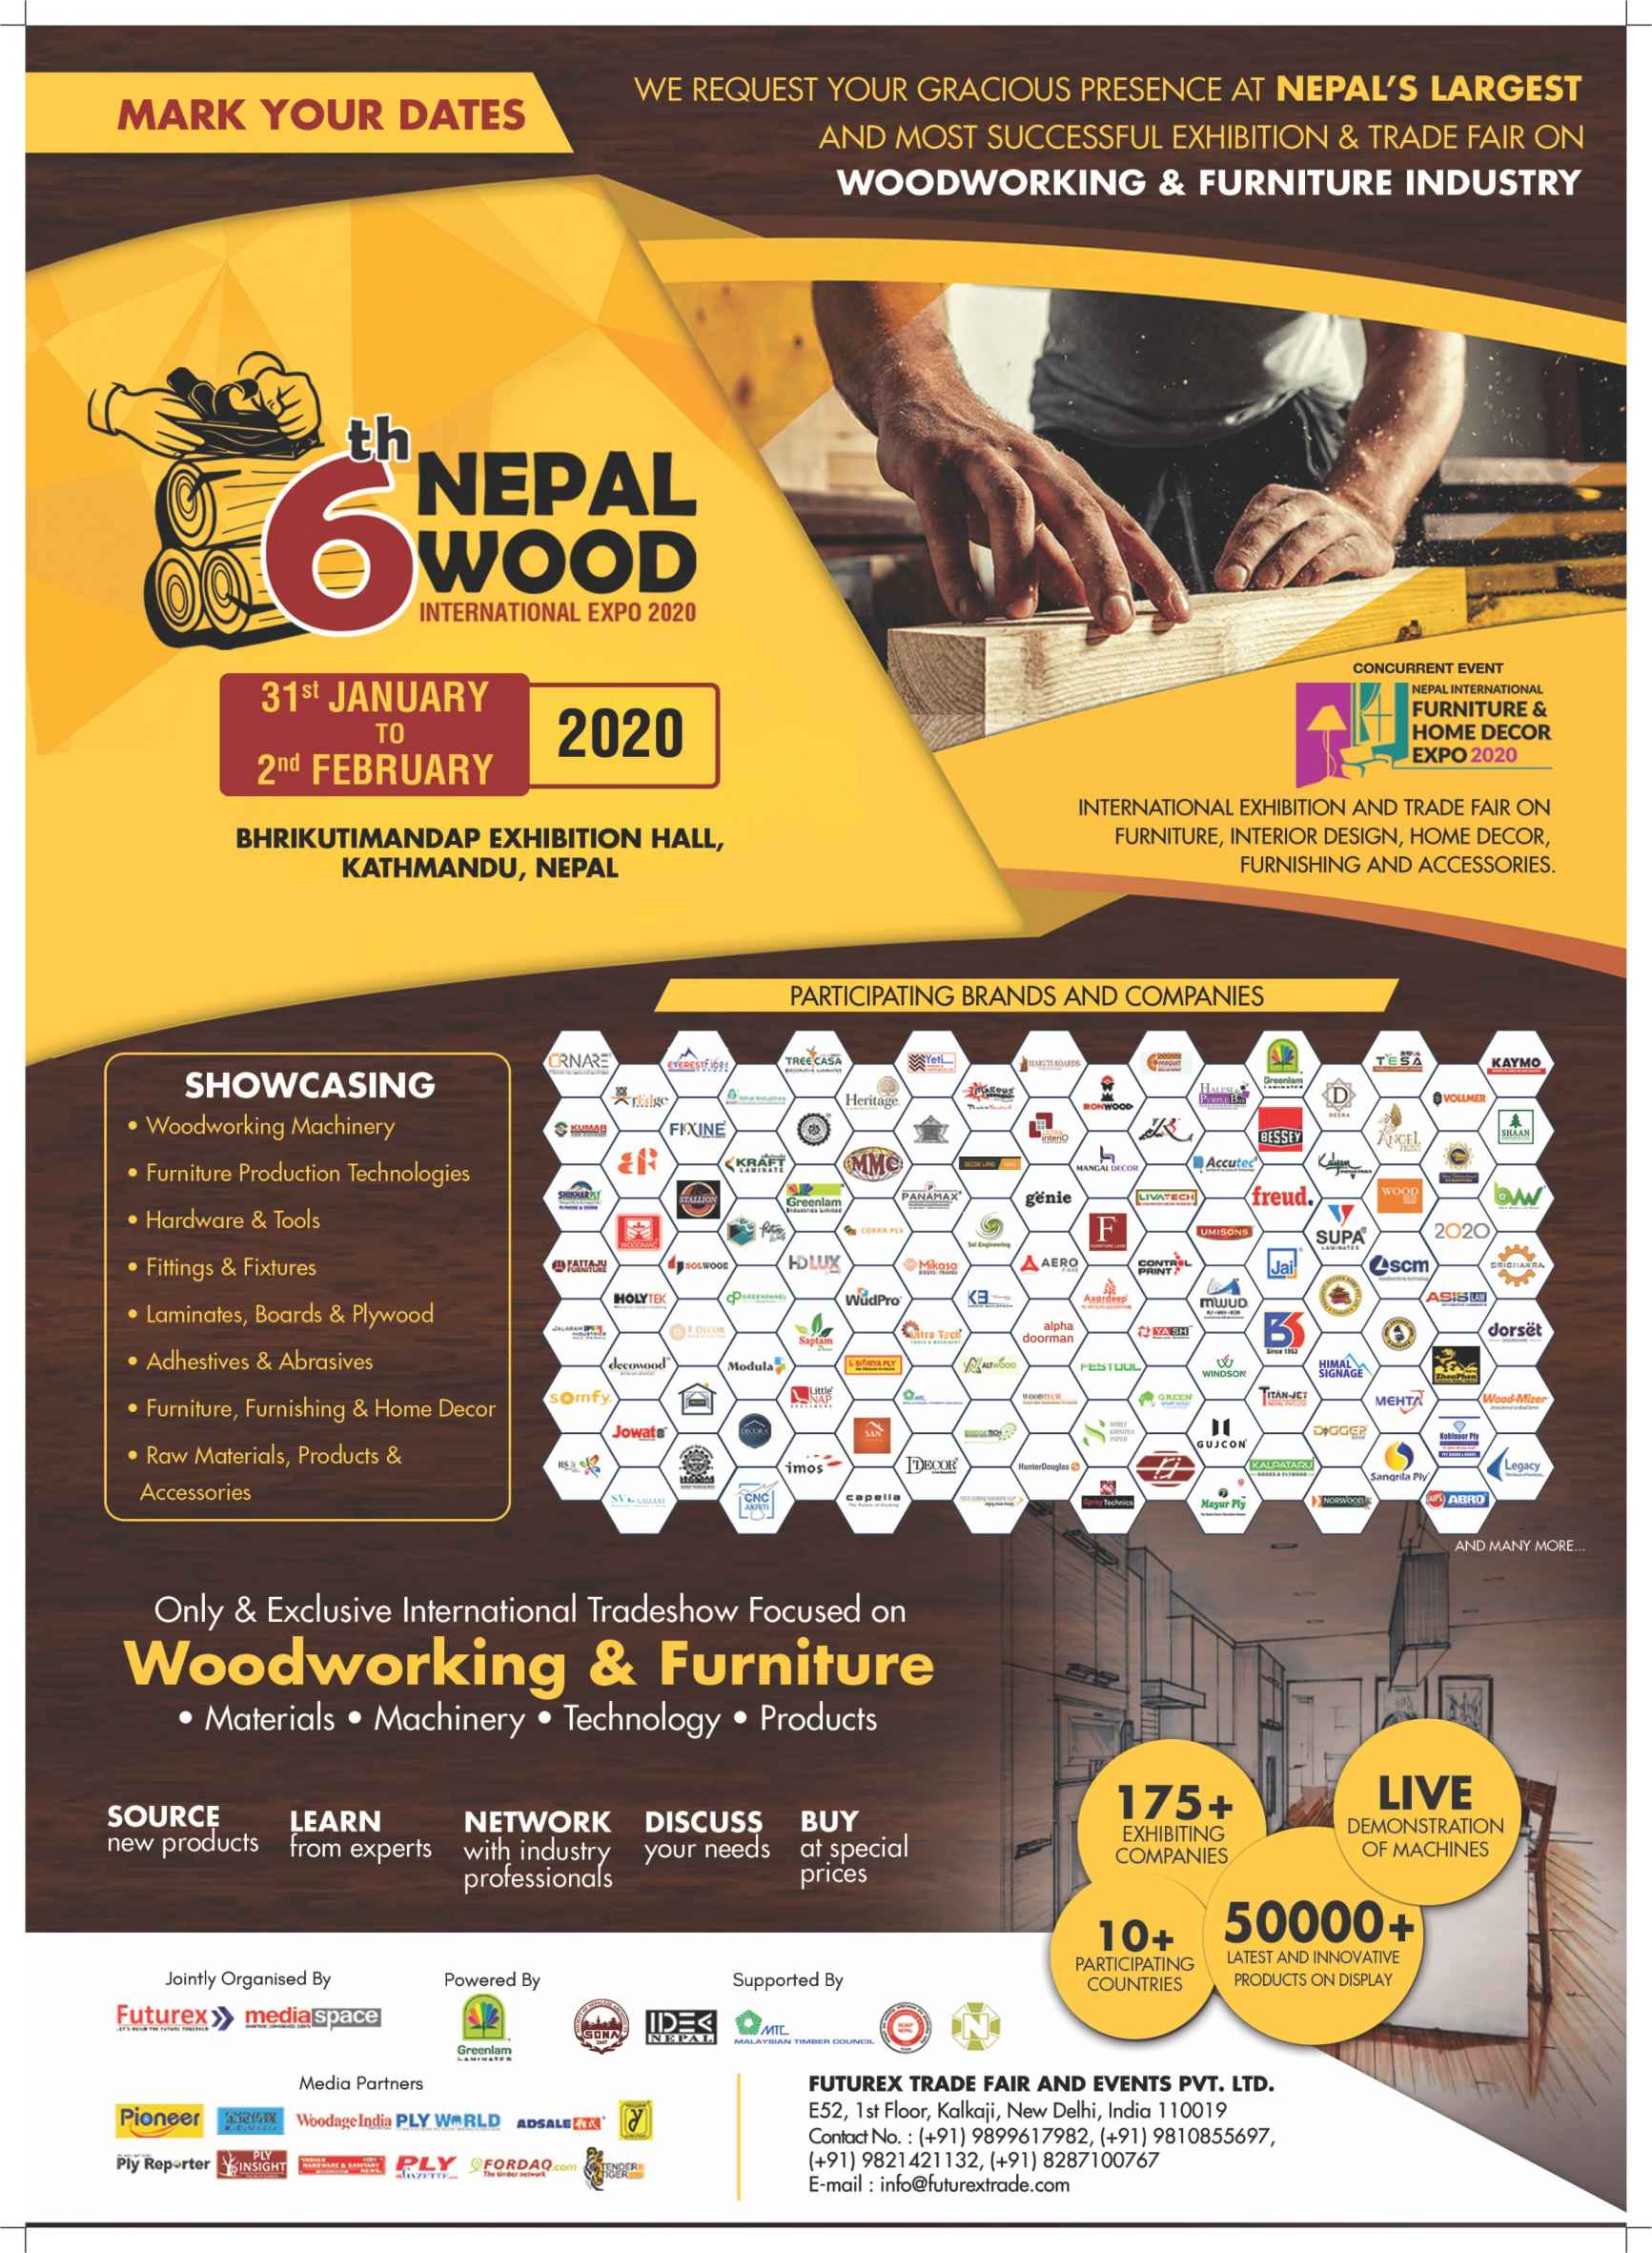 Nepal Wood